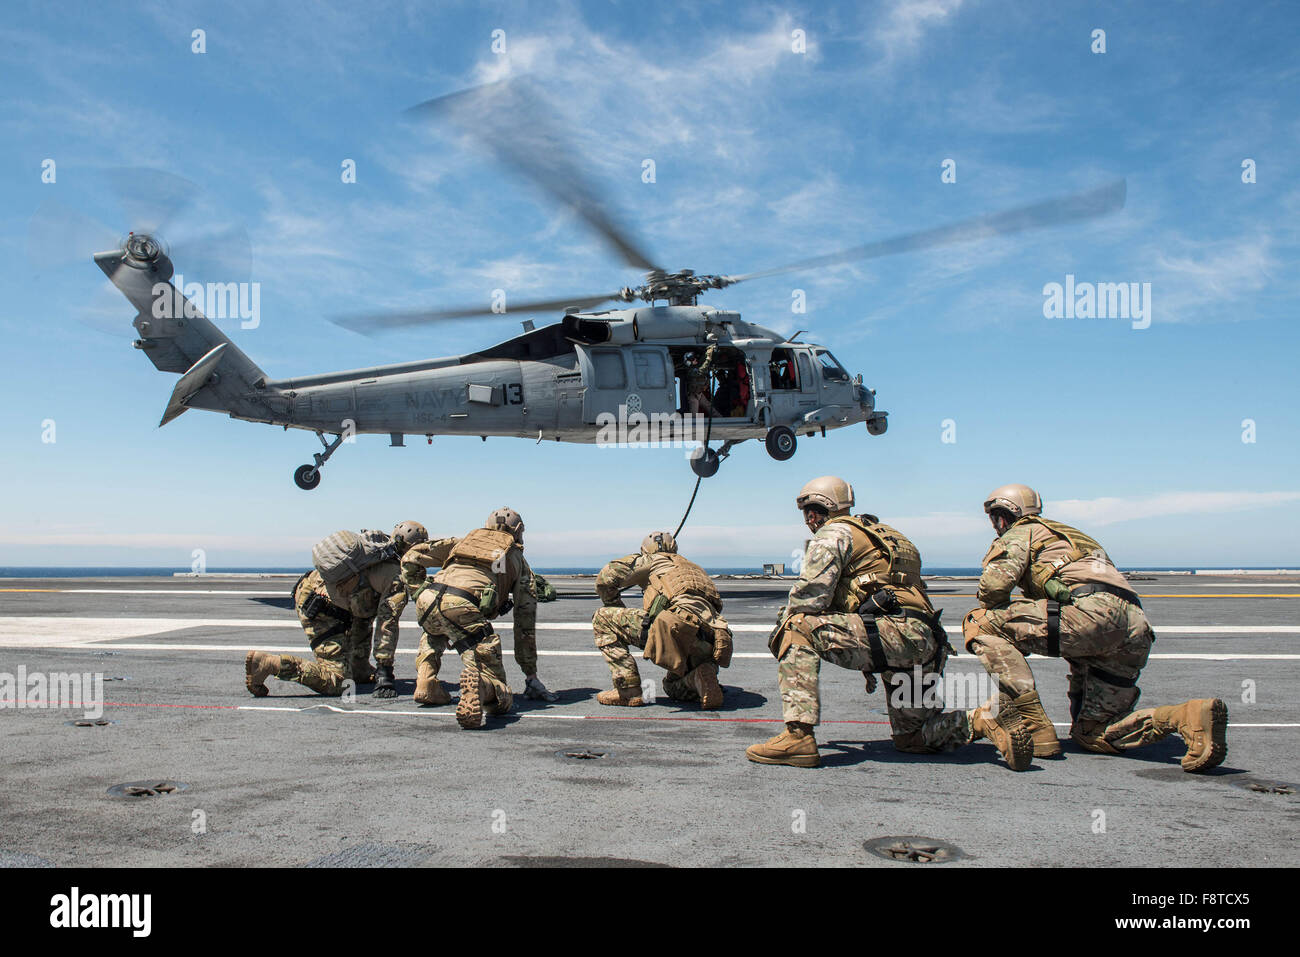 Segler, Explosive Ordnance Entsorgung Mobile Einheit (EODMU) 3, Platoon 3-1-1 und chilenische Marine Matrosen zugewiesen stemmen sich nach Fast-roping aus einem MH-60 Seahawk Hubschrauber, der Hubschrauberstaffel Meer zu bekämpfen, "Black Knights" zugewiesen Stockfoto